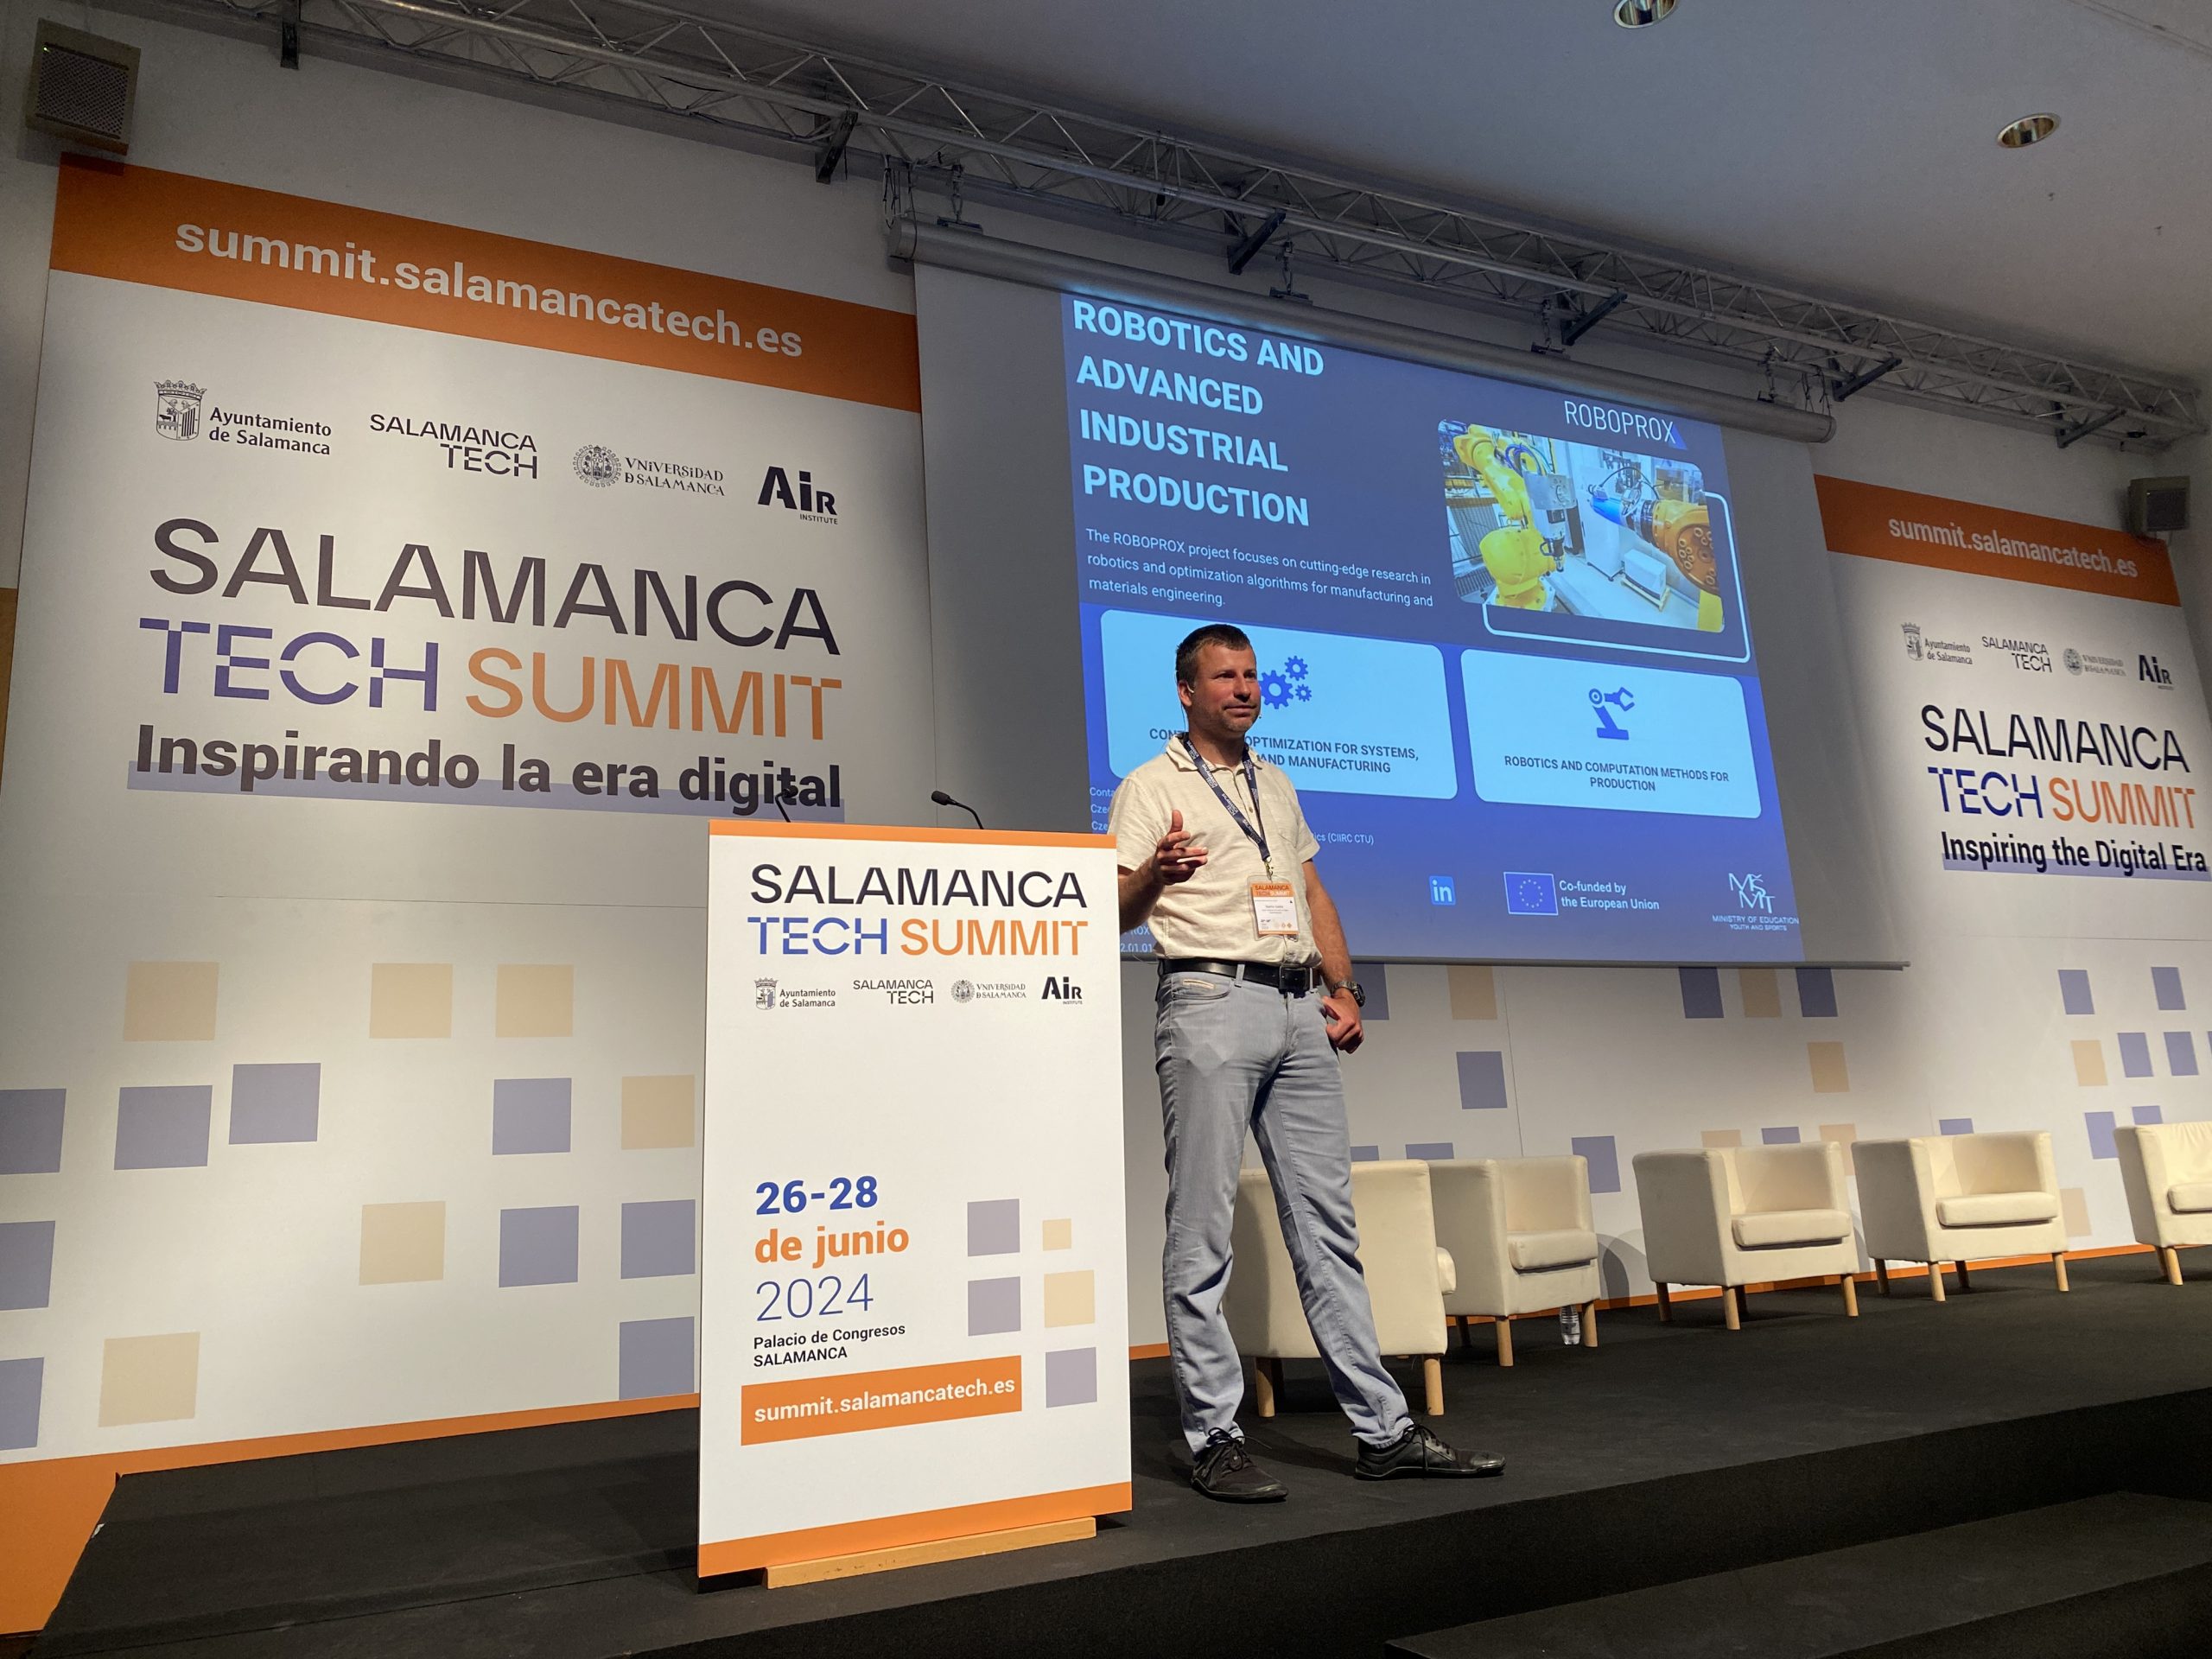 Martin Saska Presents at PAAMS Salamanca Tech Summit